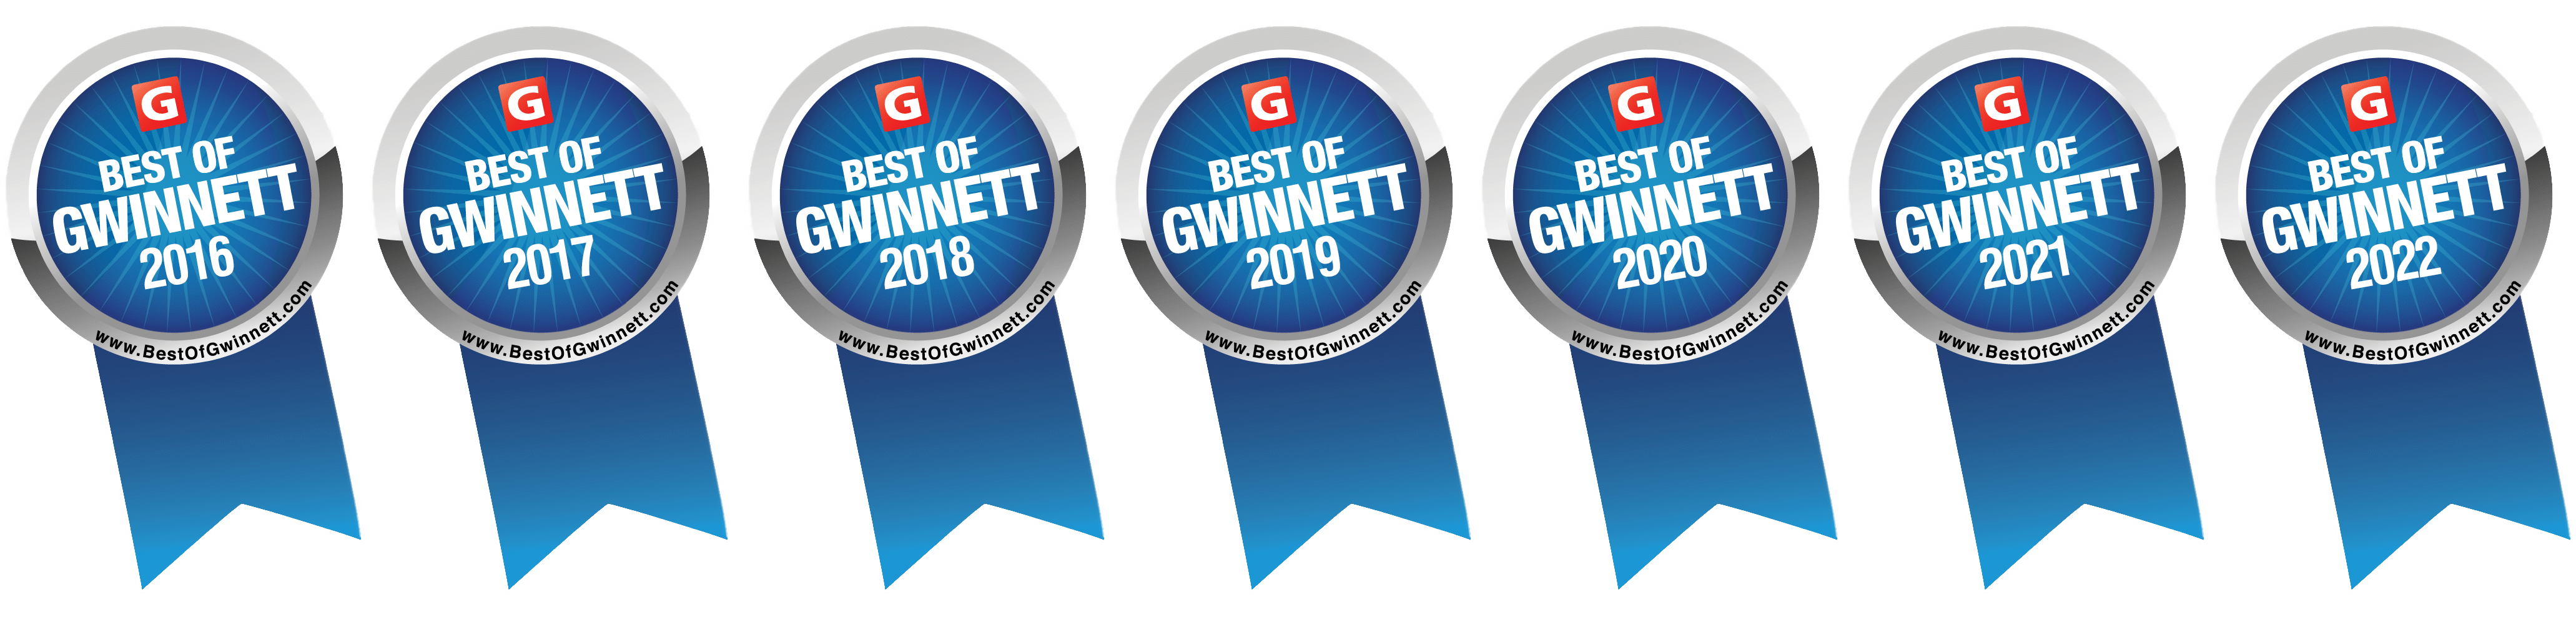  Best of Gwinnett Magazine 2016-2022